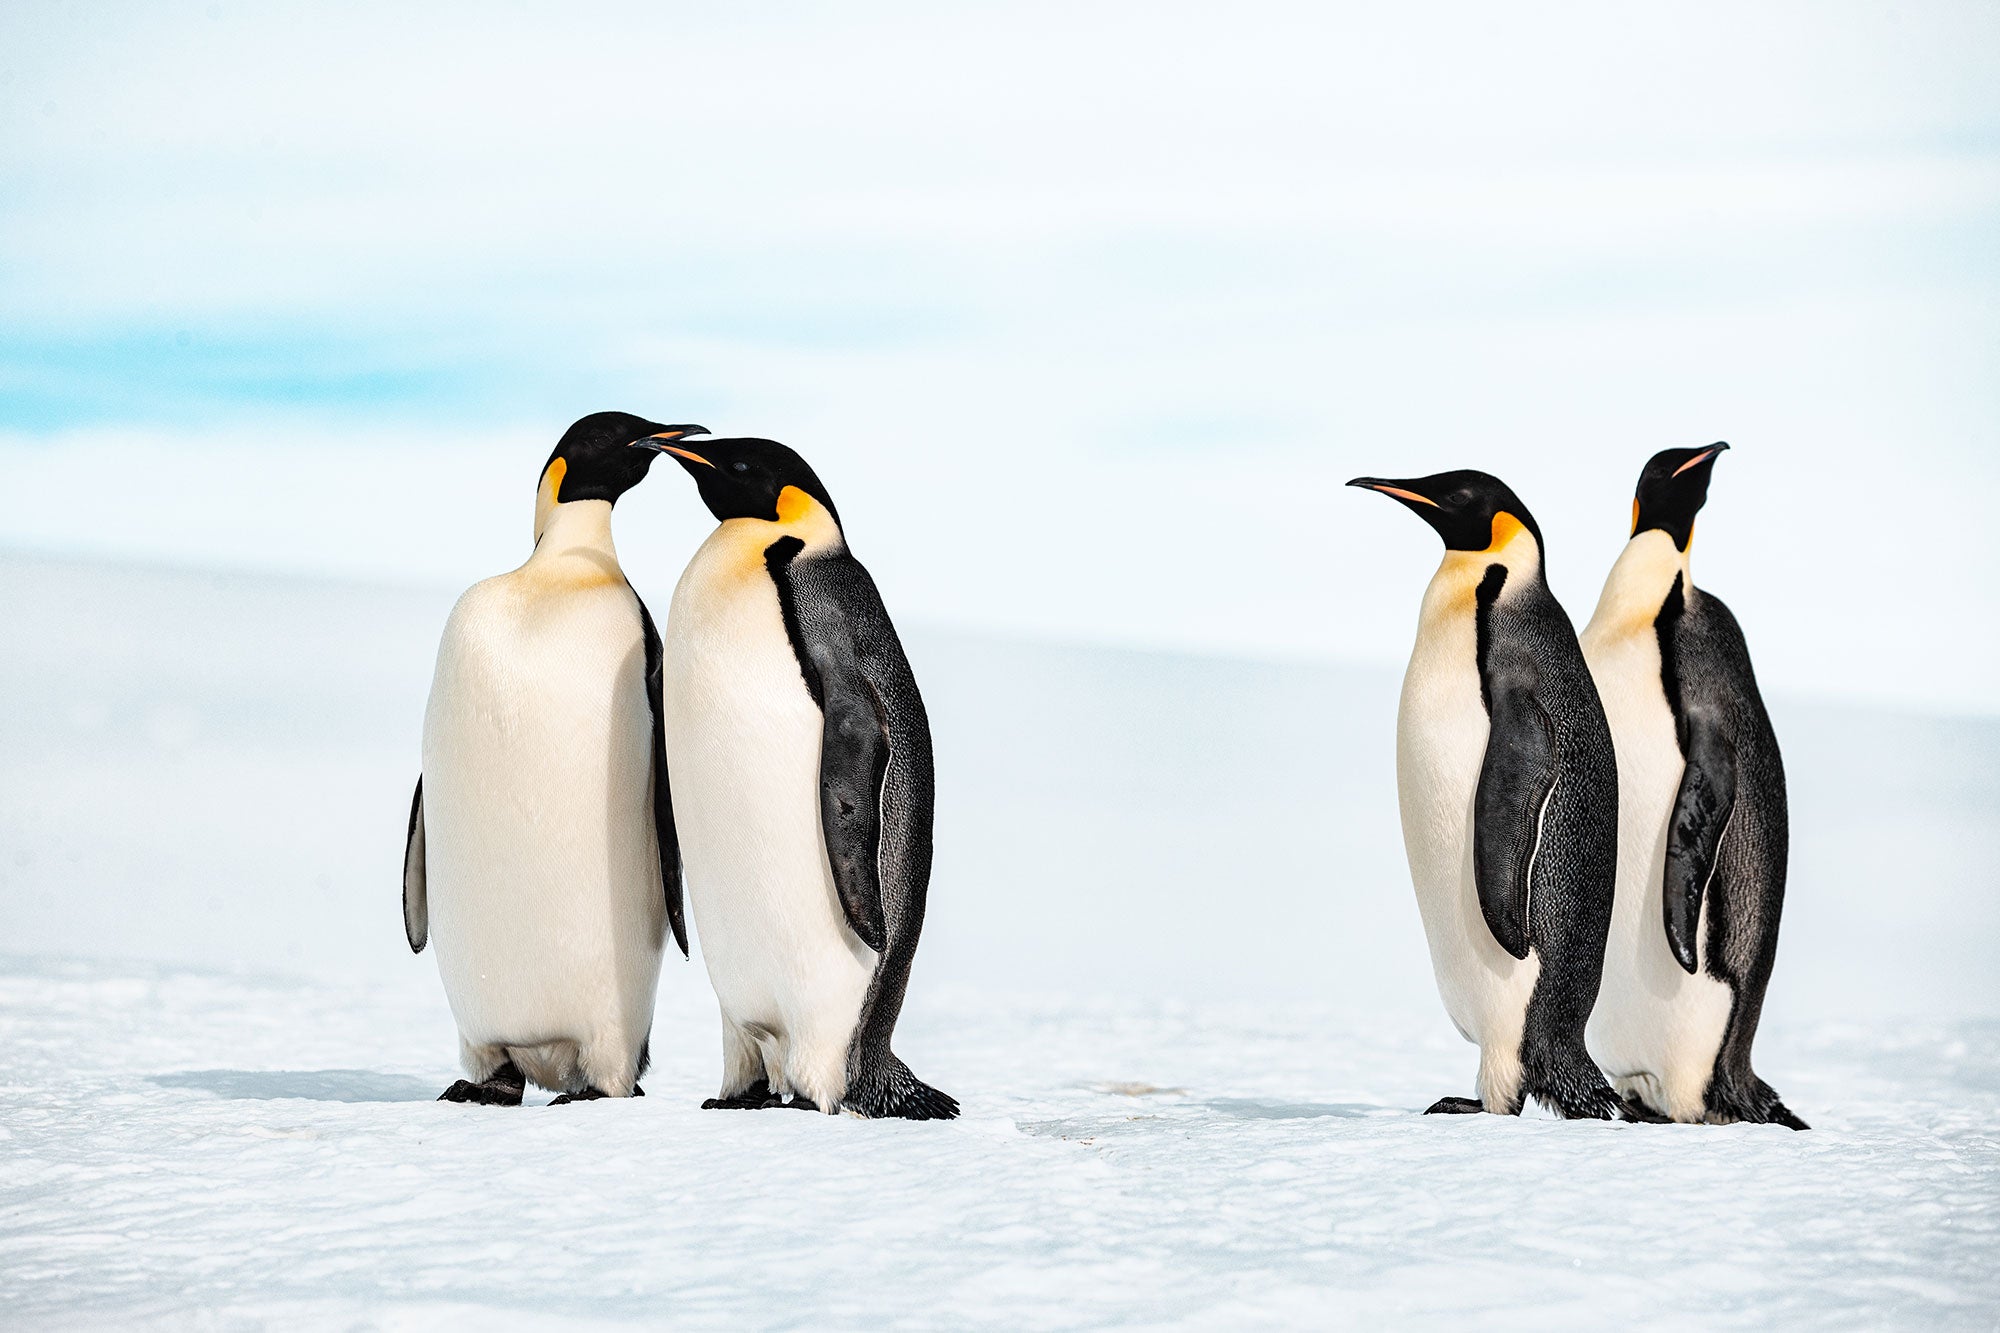 ウェッデル海の皇帝ペンギンに出会う旅